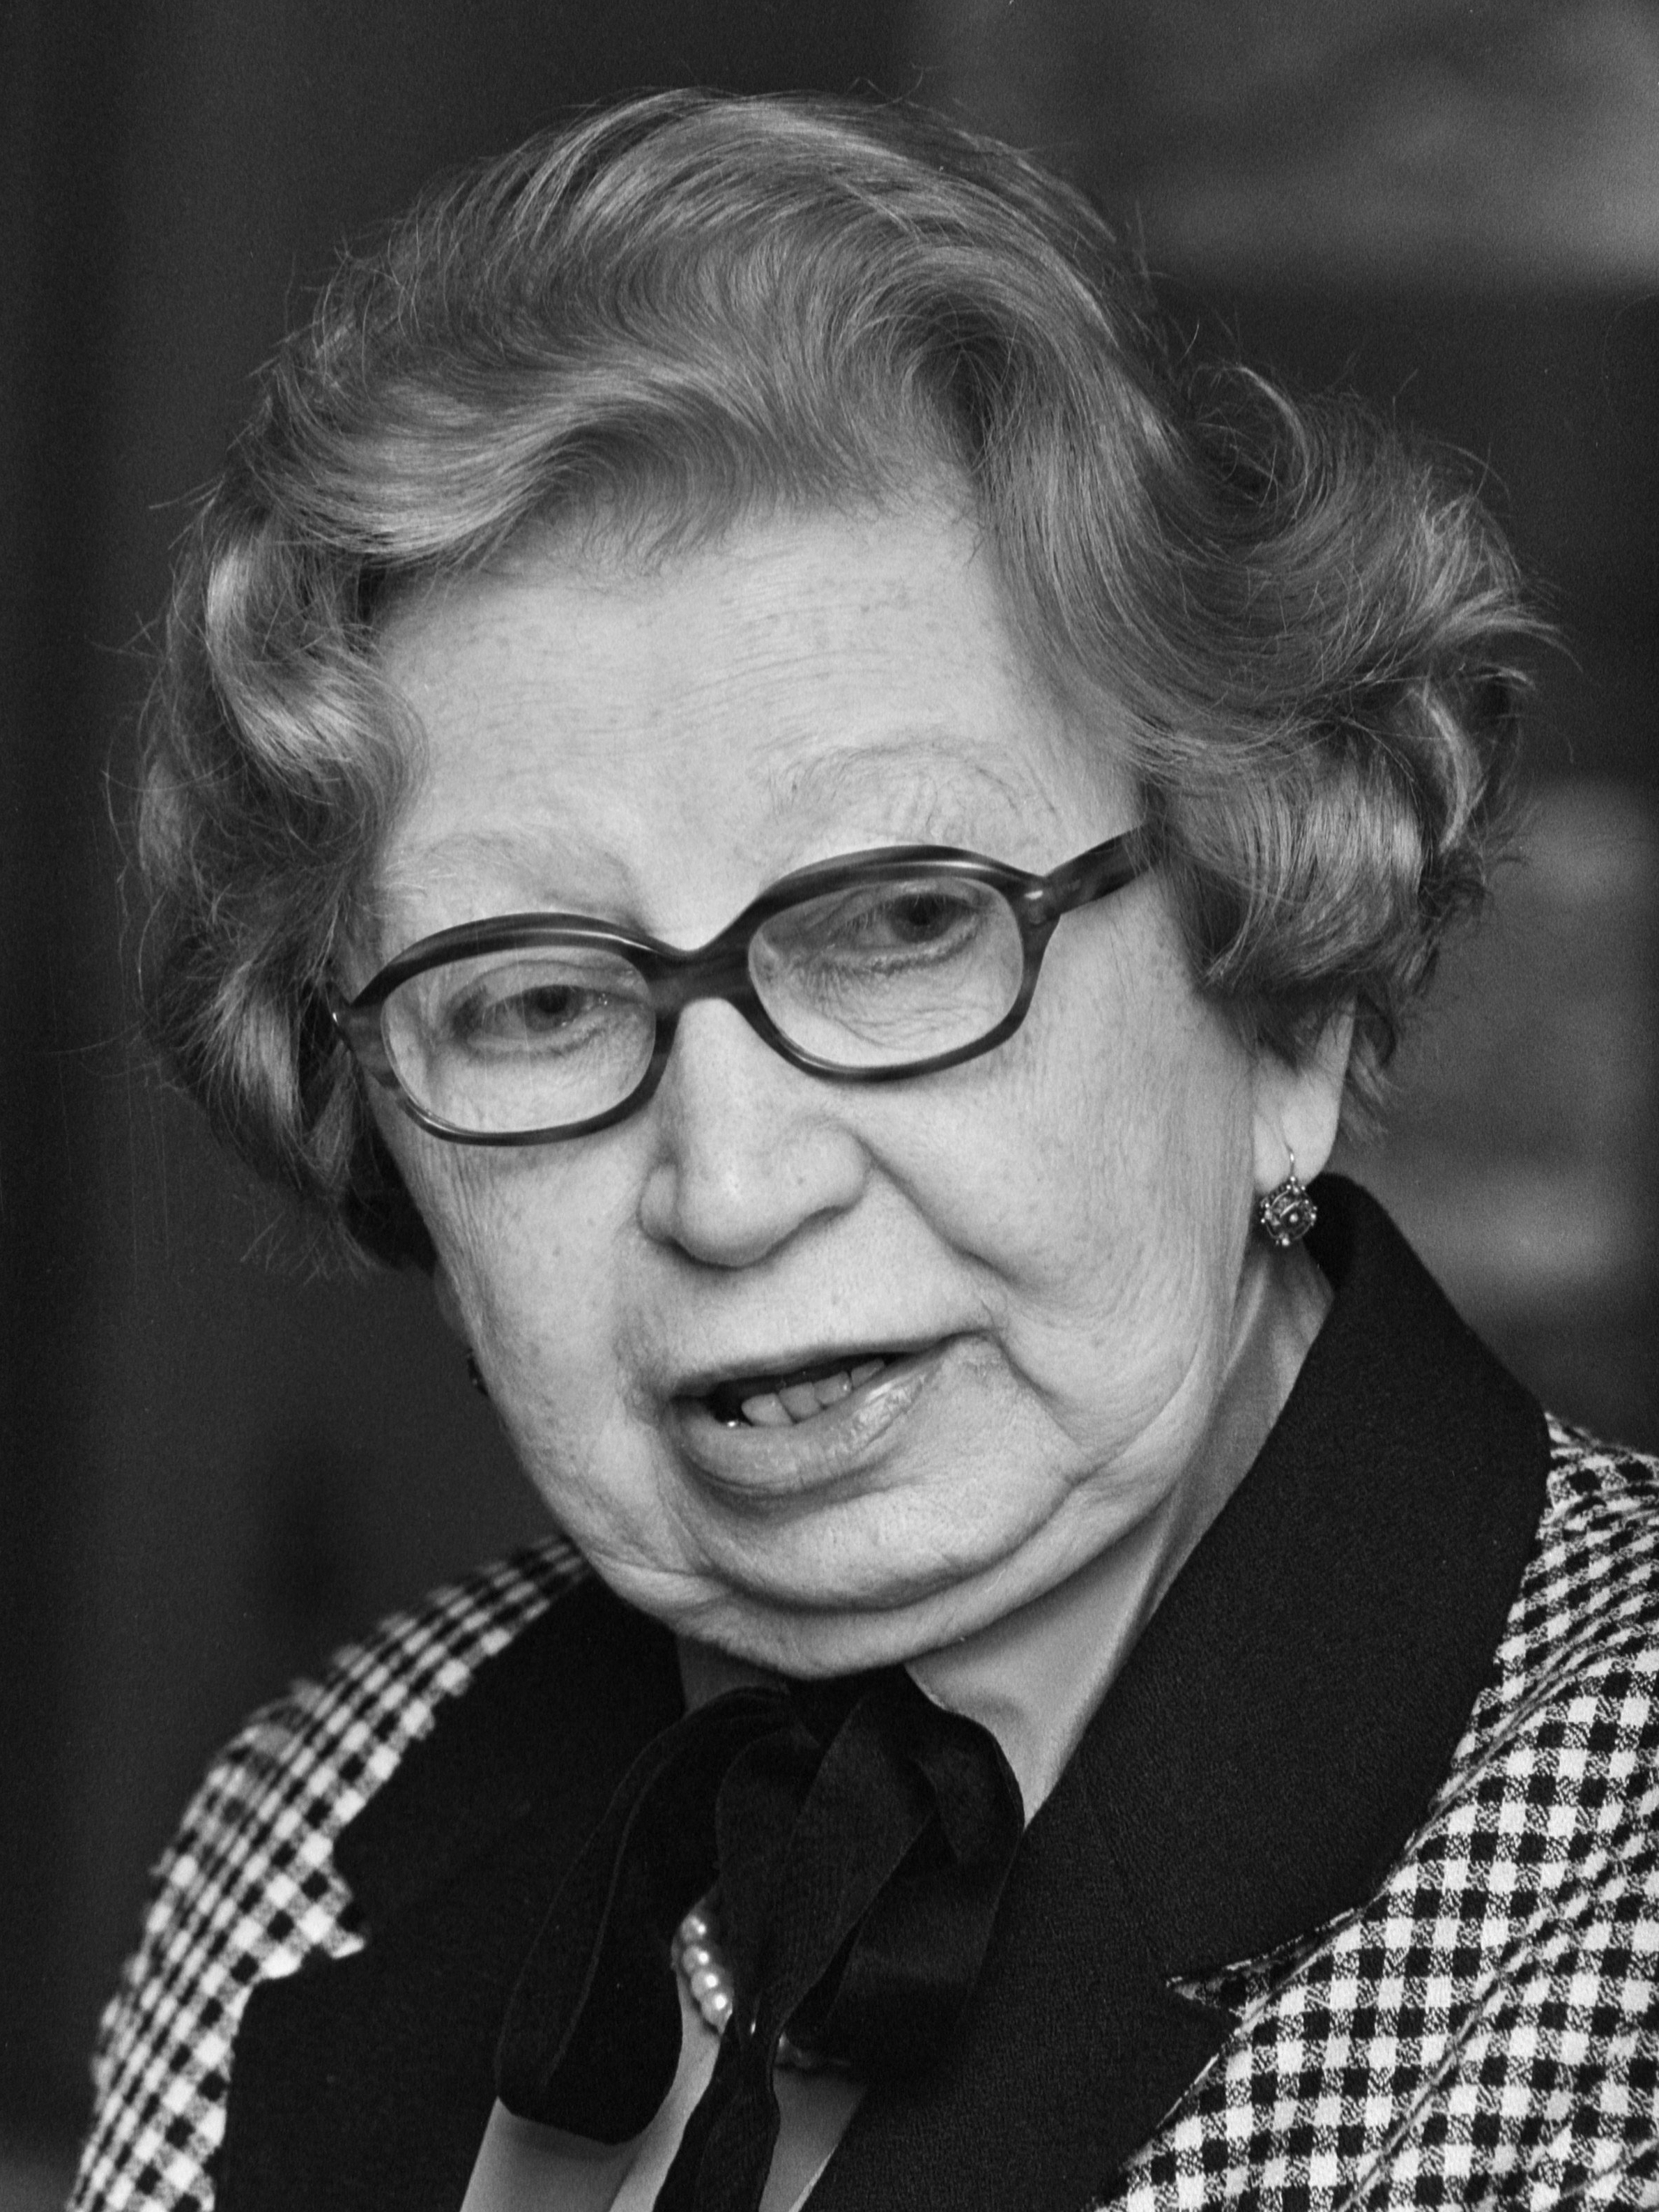 auteur Miep Gies de la citation Je ne veux pas être considéré comme un héros ... imaginez que les jeunes grandiraient avec le sentiment que vous devez être un héros pour faire votre devoir humain. J'ai peur que personne ne aide jamais les autres, car qui est un héros? Je n'étais pas. J'étais juste une femme au foyer ordinaire et un secrétaire.